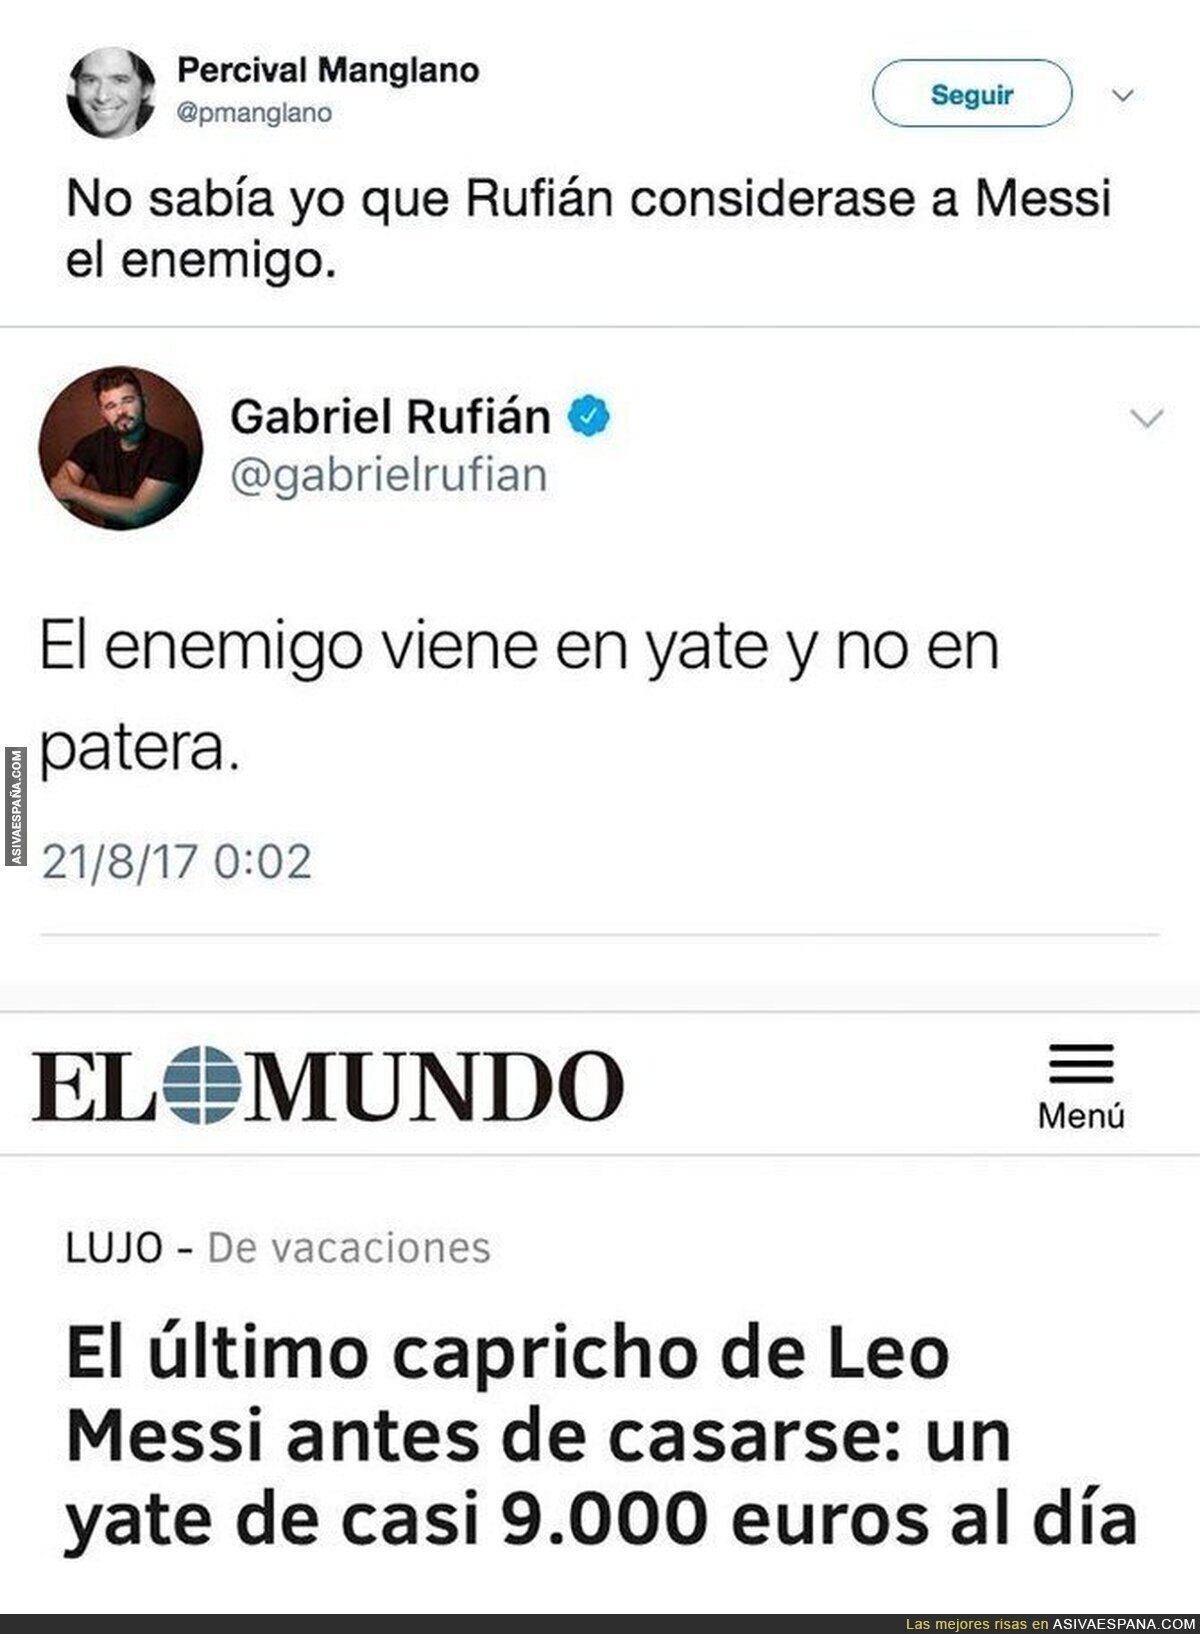 Messi es el enemigo para Gabriel Rufián